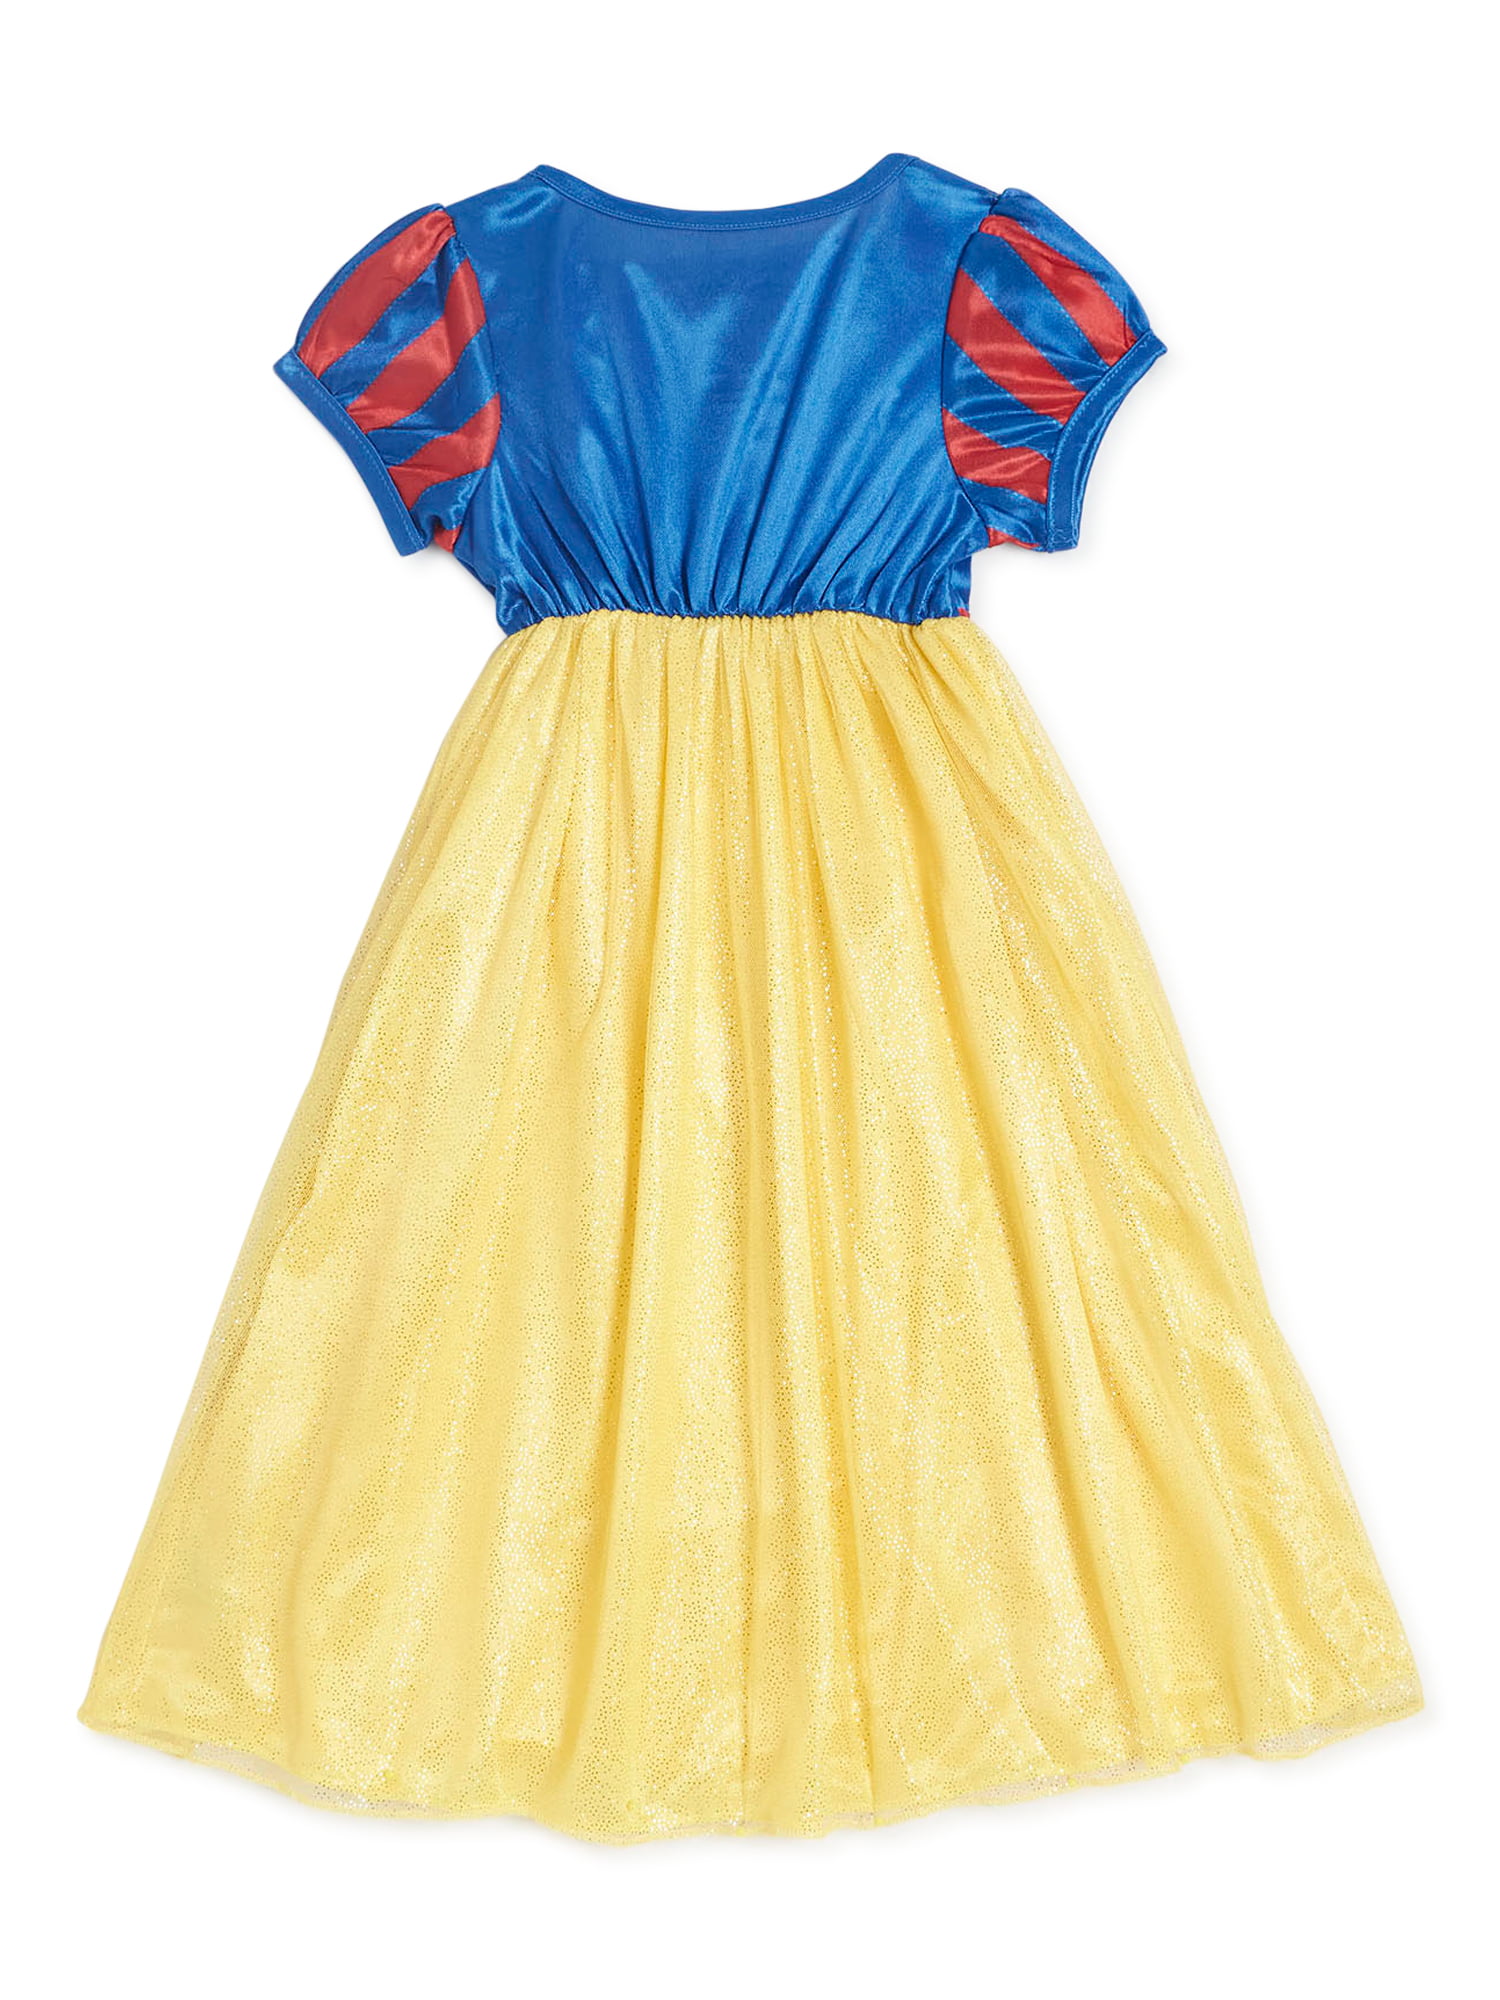 Snow White Disney Princess Fantasy Gown Nightgown